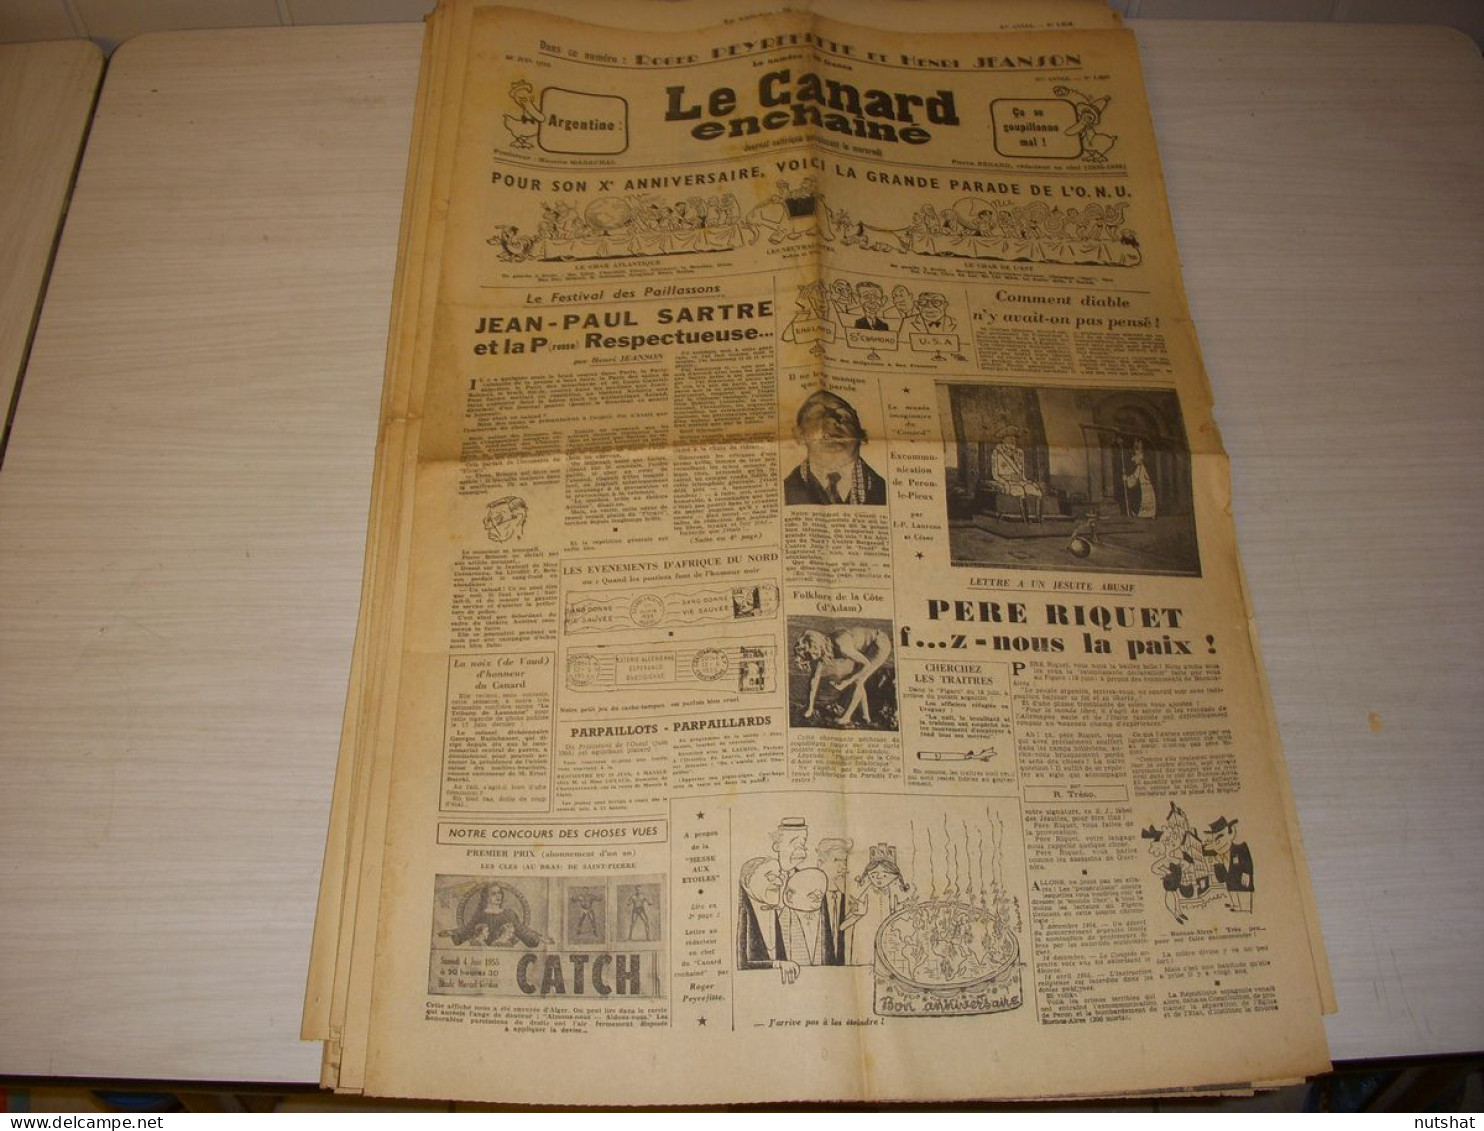 CANARD ENCHAINE 1809 22.06.1955 Henri SALVADOR Rene PLEVEN Alphonse JUIN SARTRE - Política